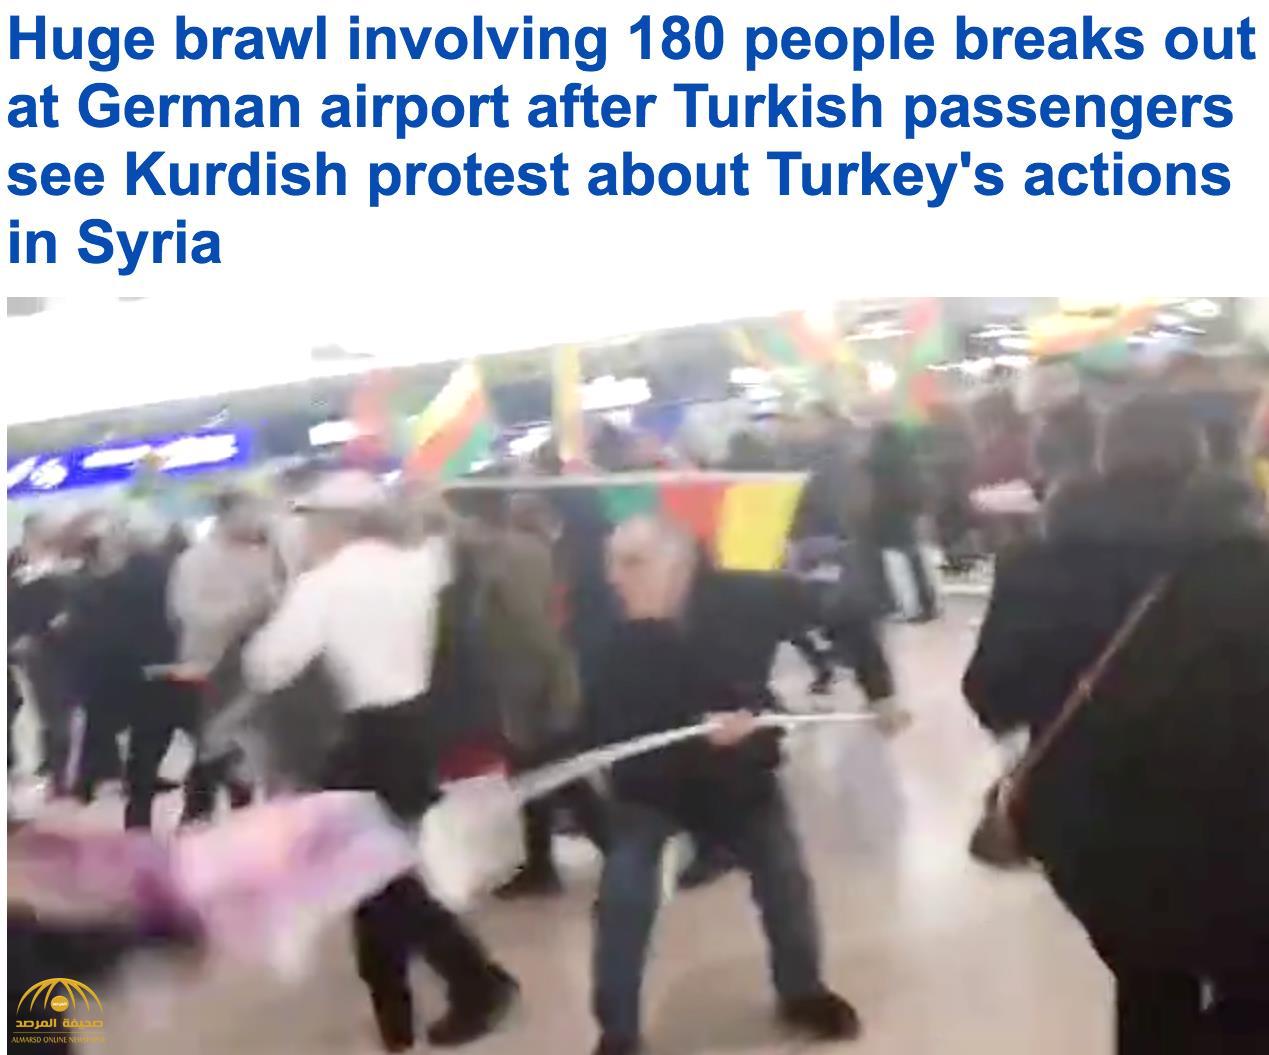 شاهد بالفيديو: أكراد وأتراك يحولون مطار ألماني إلى حلبة مصارعة بسبب عملية "عفرين"